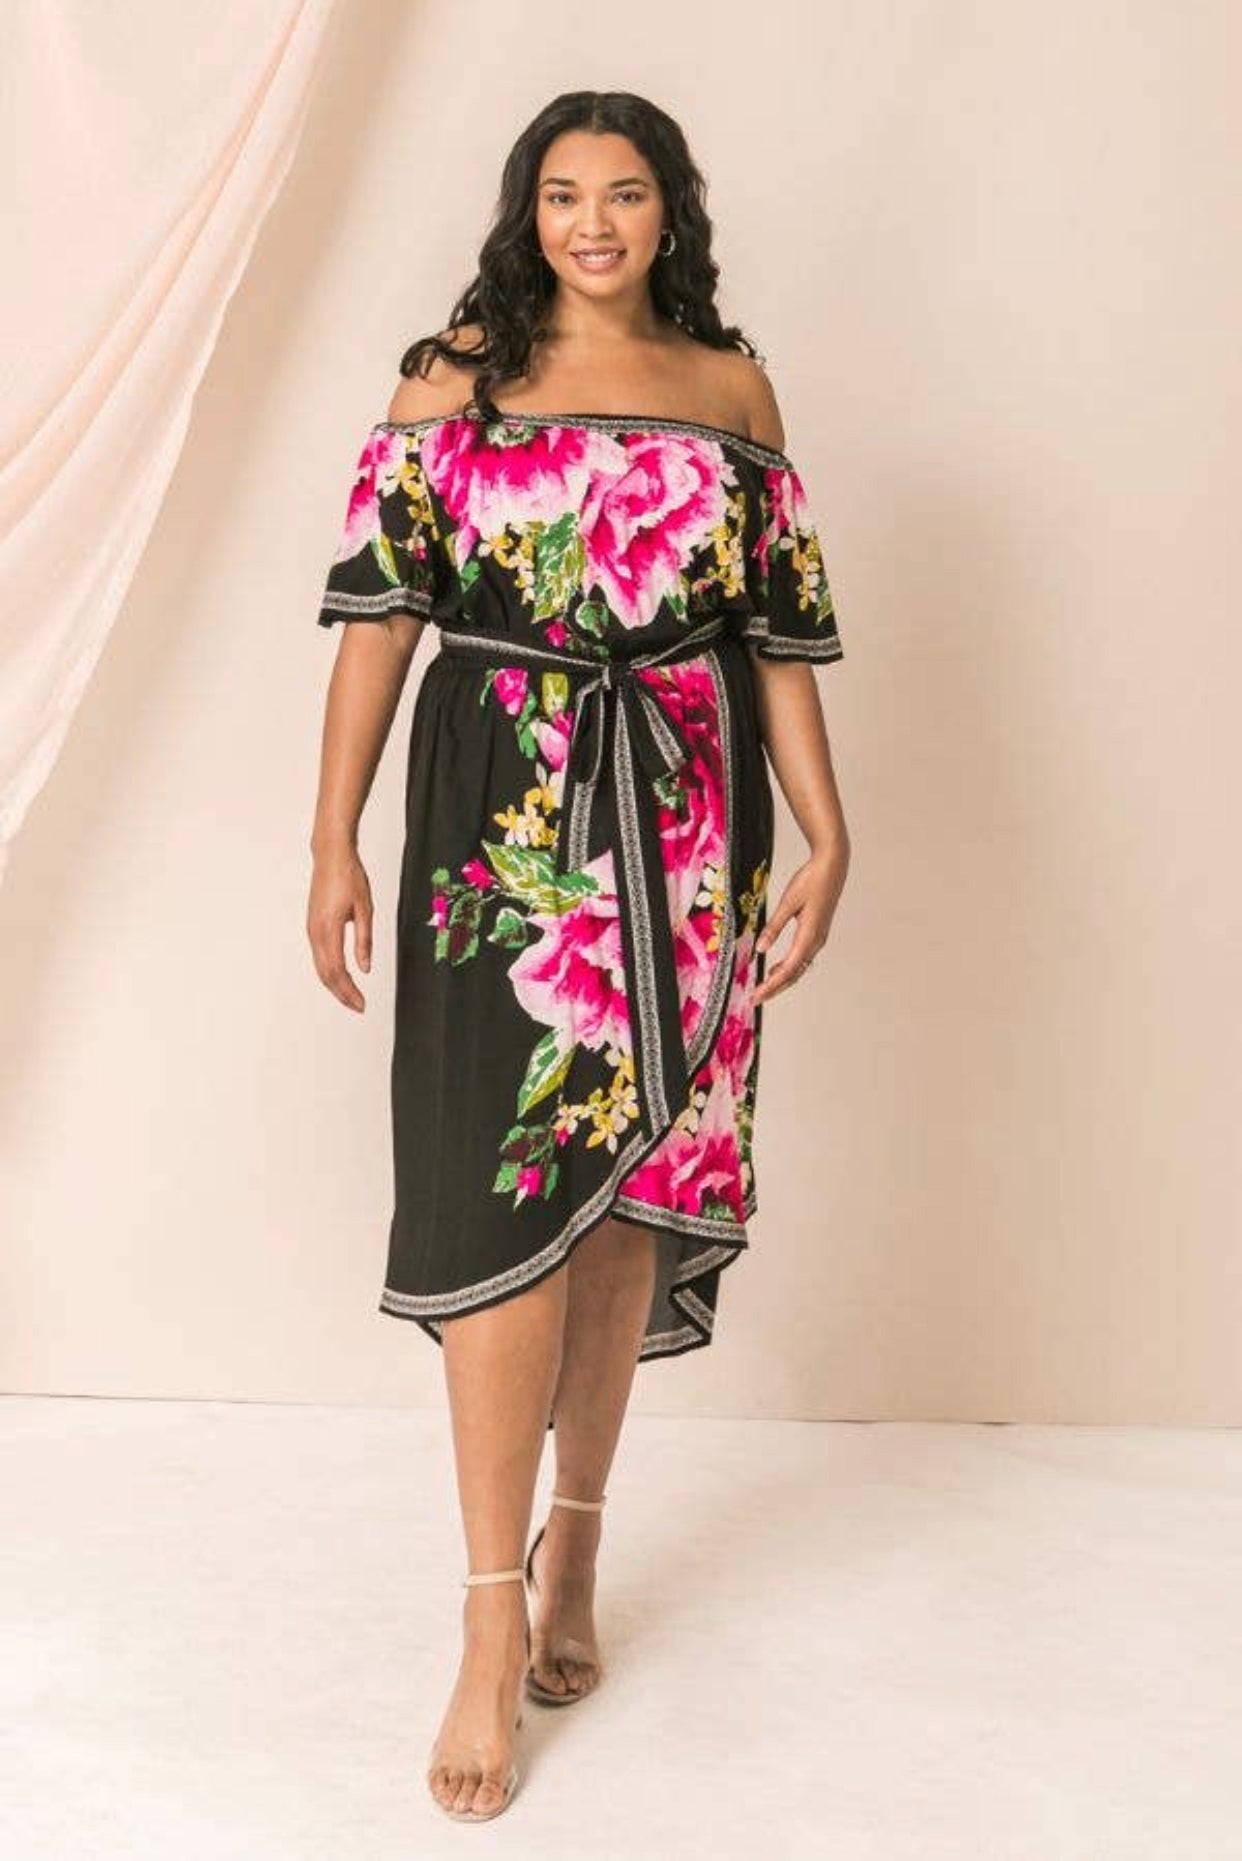 Plus Size Fashion Off Shoulder Floral Dress, Sizes 1X - 3X